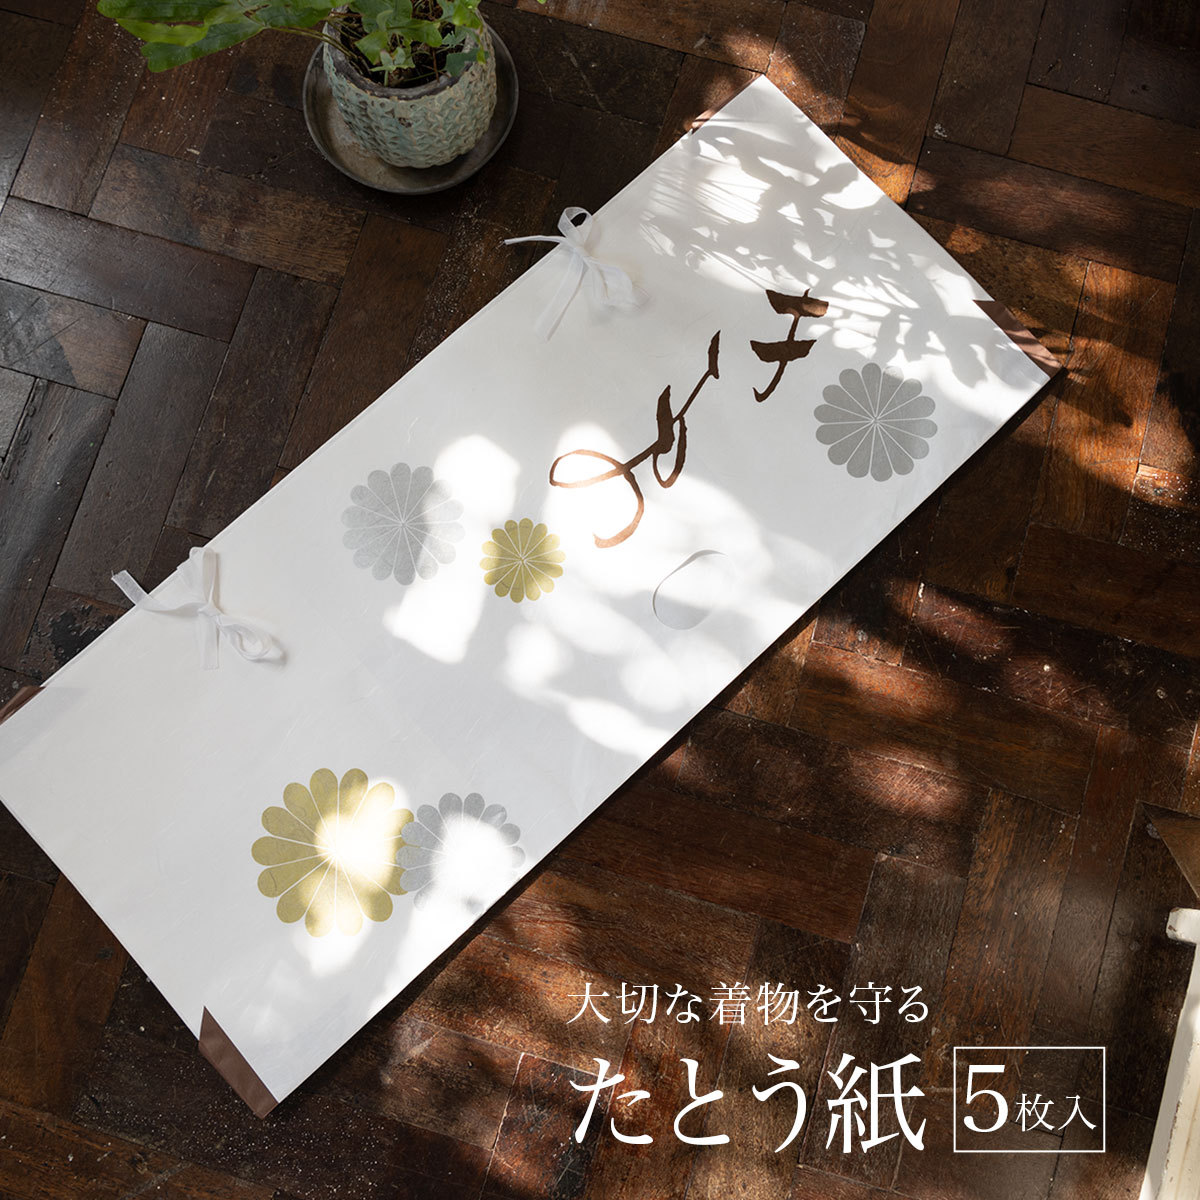 Made in Japan たとう紙 Lot Tatoushi x2 Etuis papier pour stockage yukata et haori 